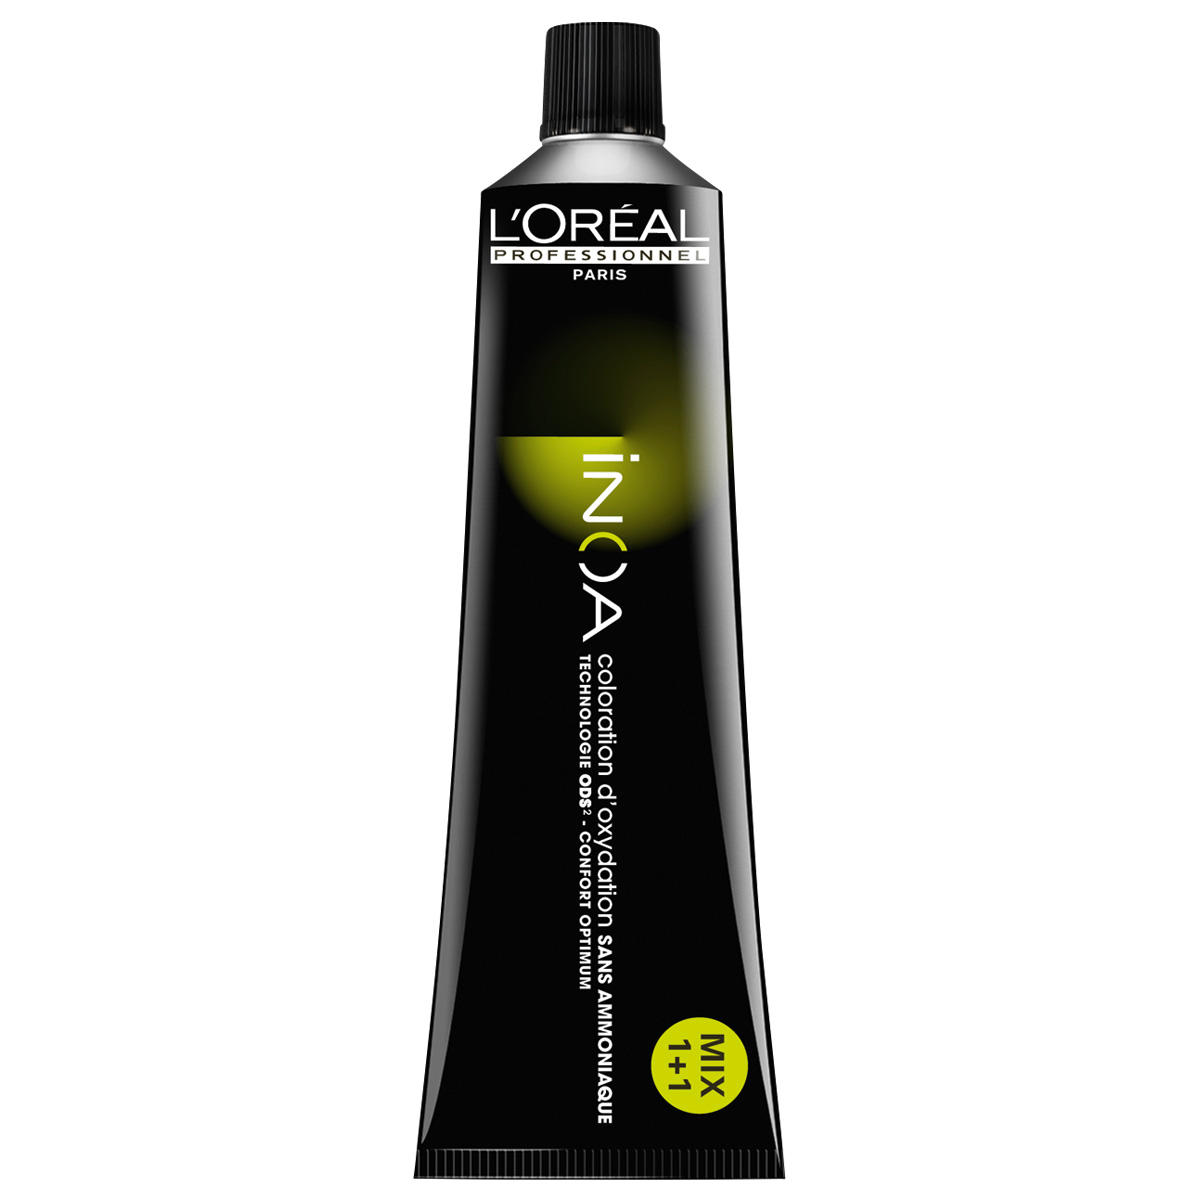 L'Oréal Professionnel Paris Coloration 6.3 Donker blond goud, tube 60 ml